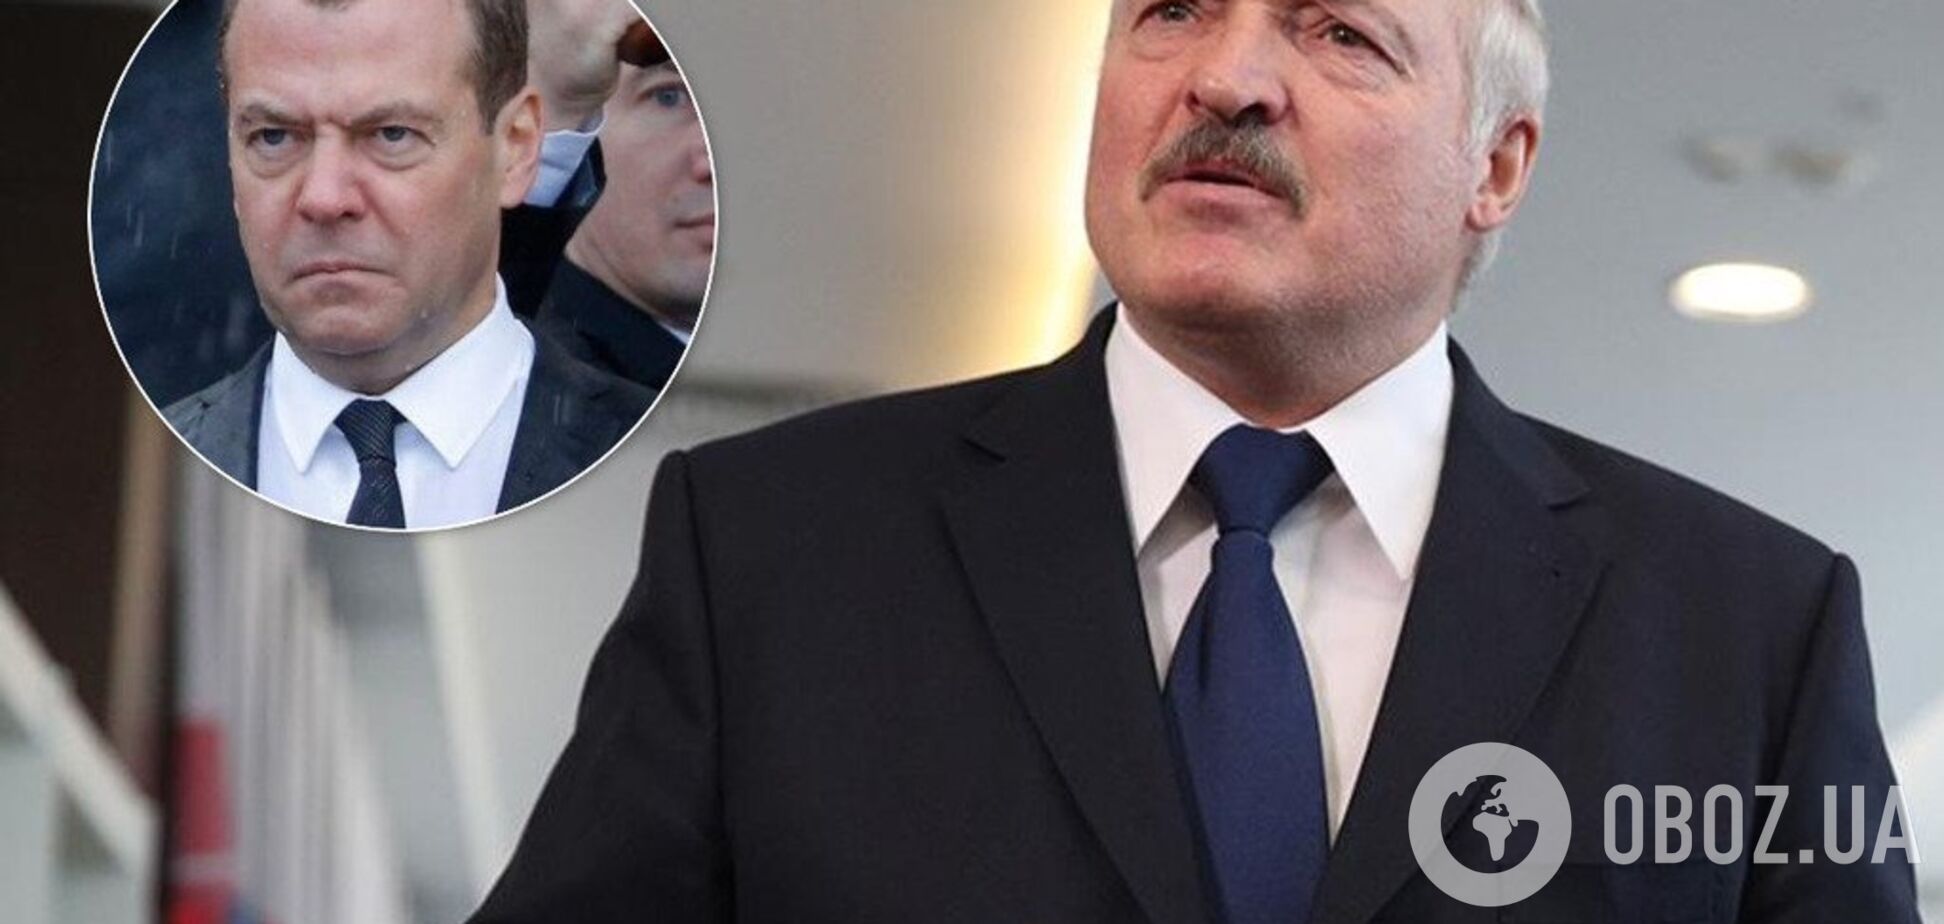 Лукашенко 'наехал' на Медведева из-за нефти